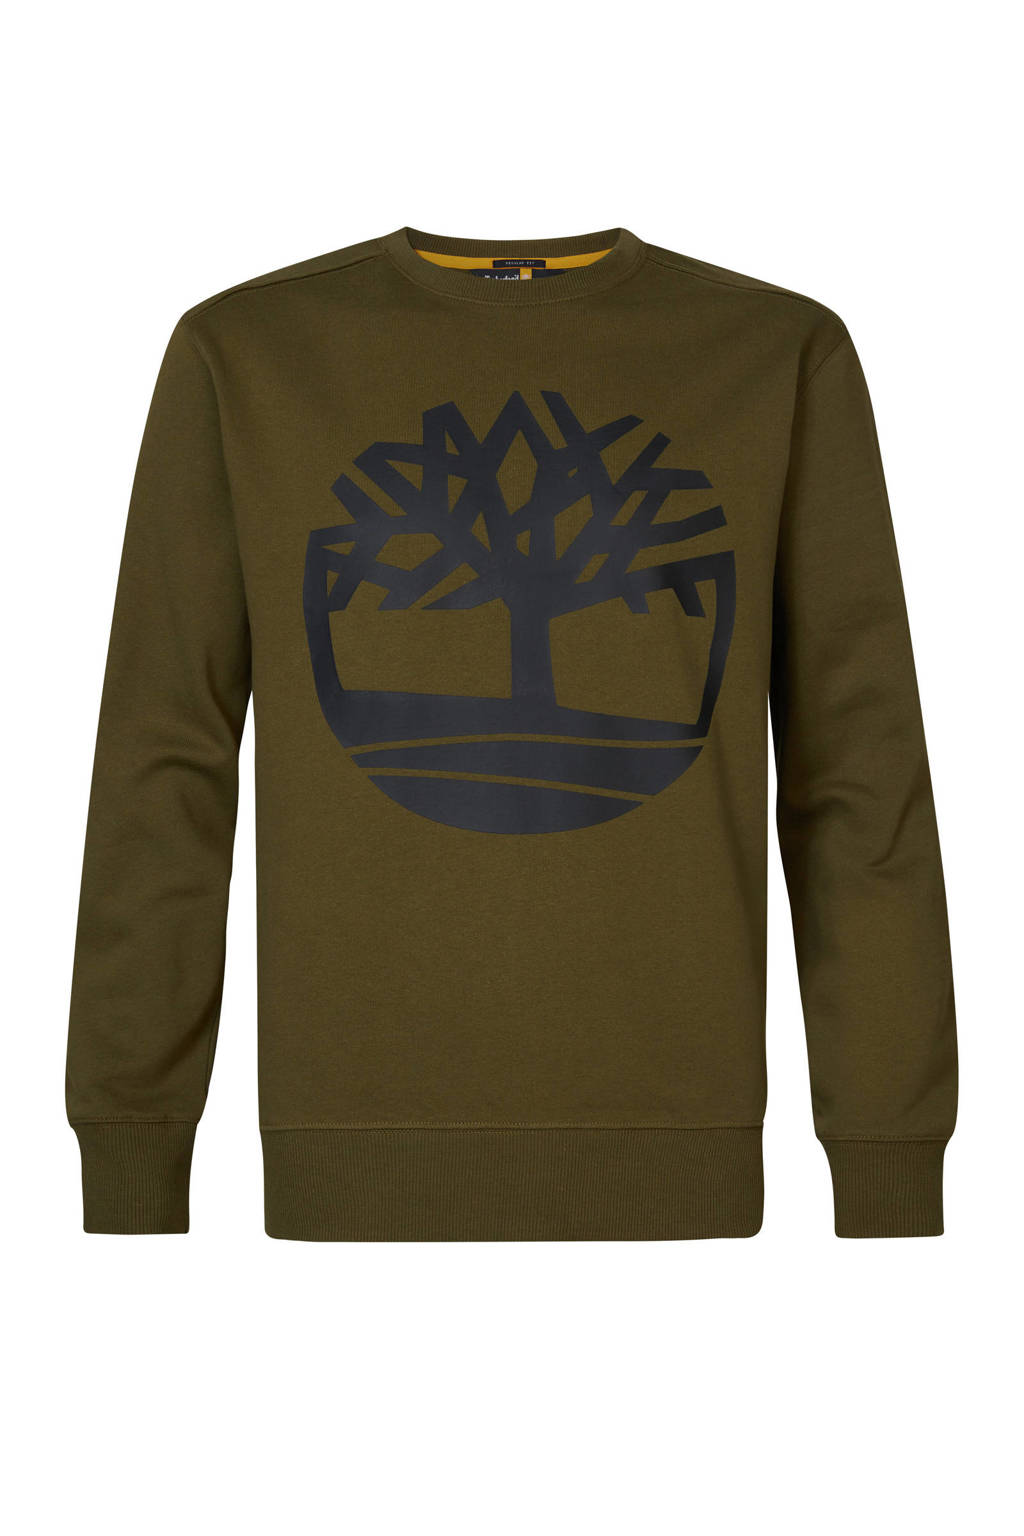 Timberland sweater met printopdruk groen, Groen